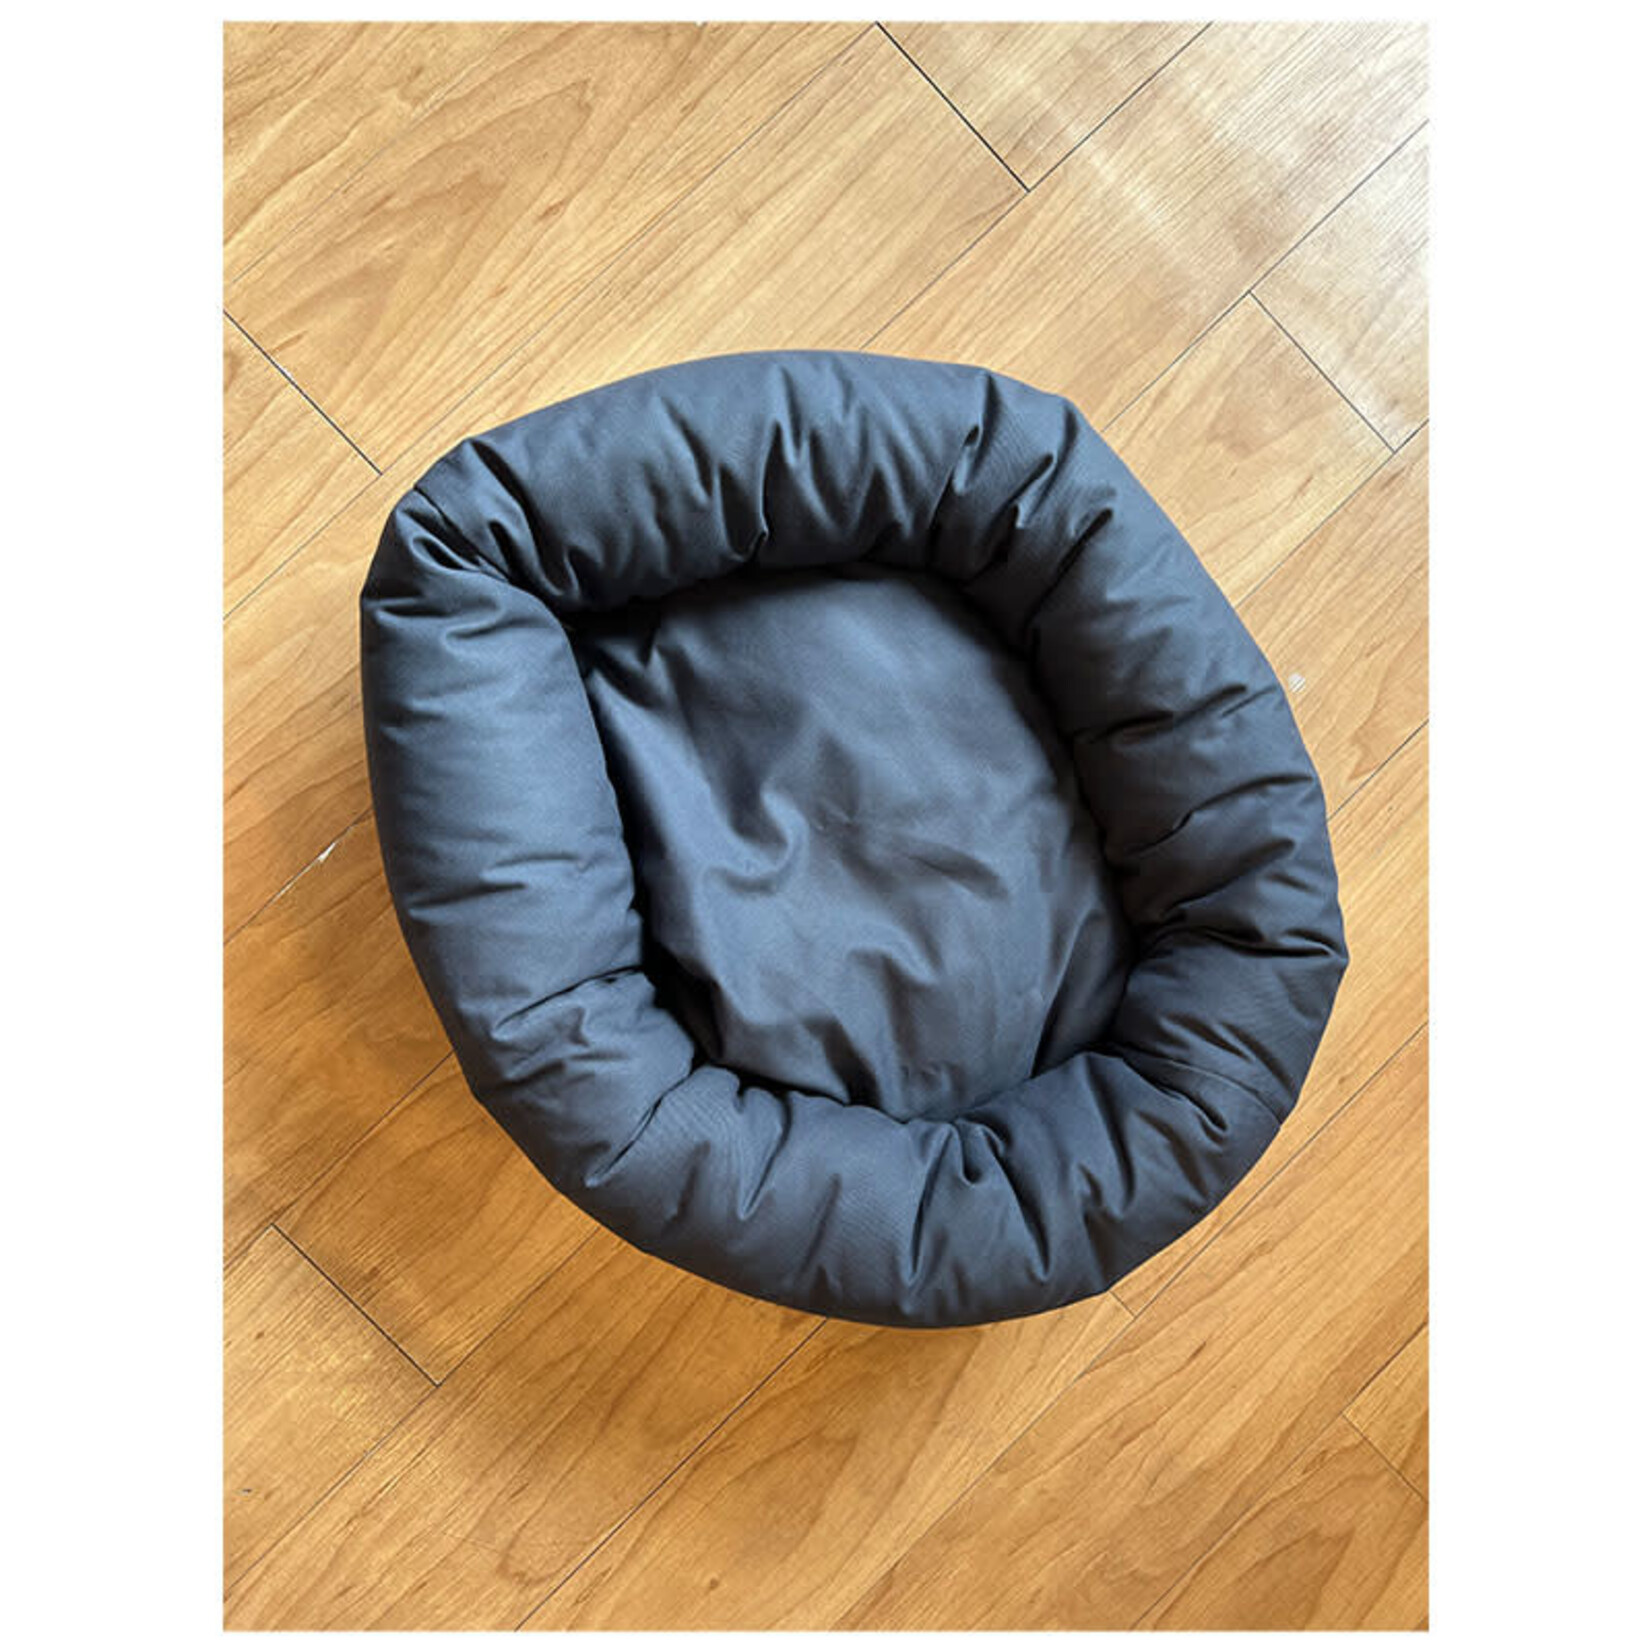 Aviva Designs Ltd. Aviva Designs - Oval Donut Bed - Slate